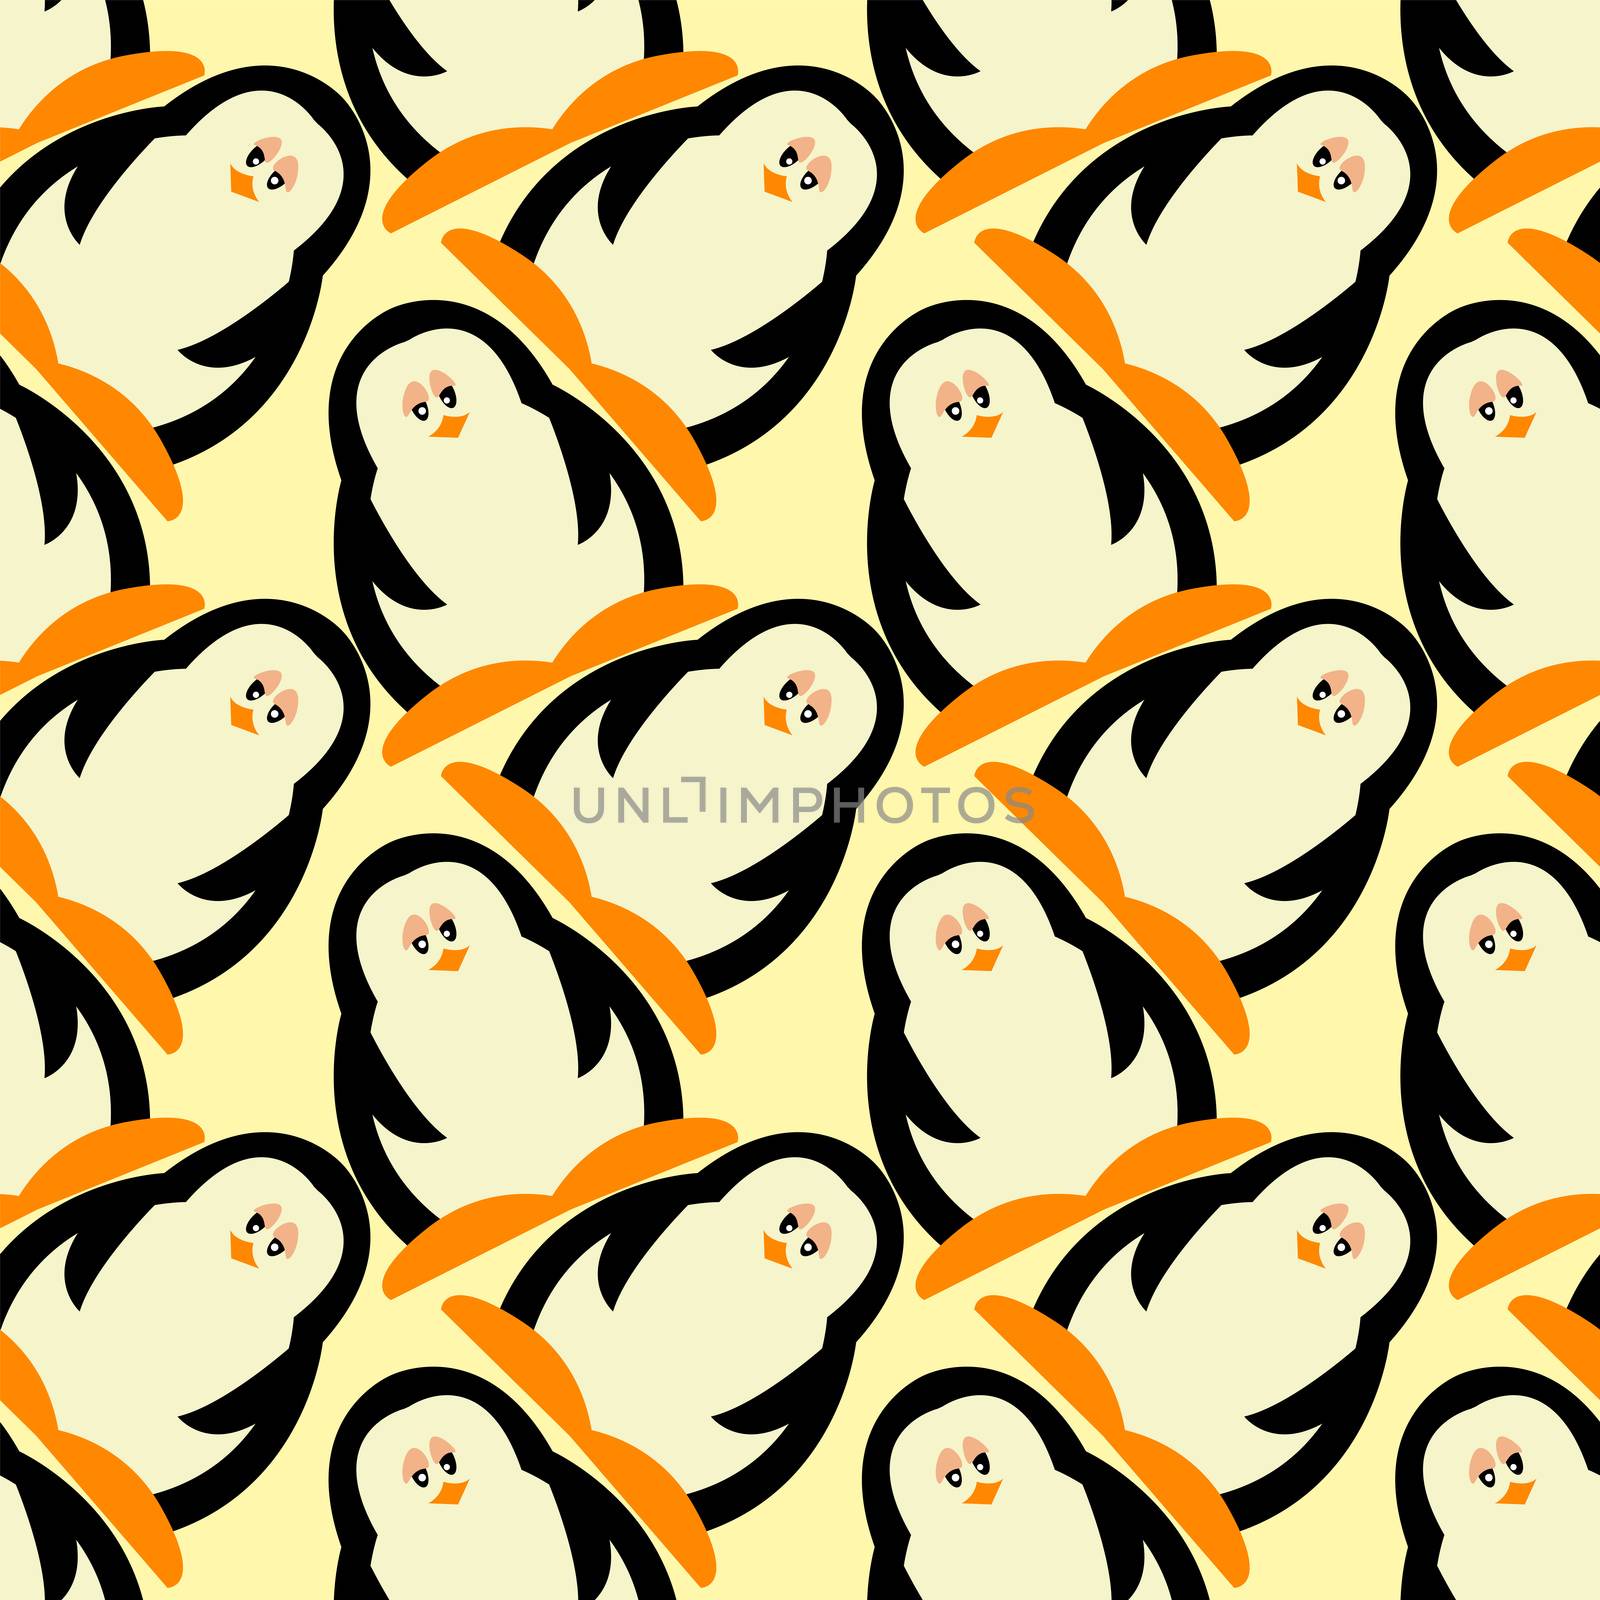 Penguin pattern , illustration, vector on white background